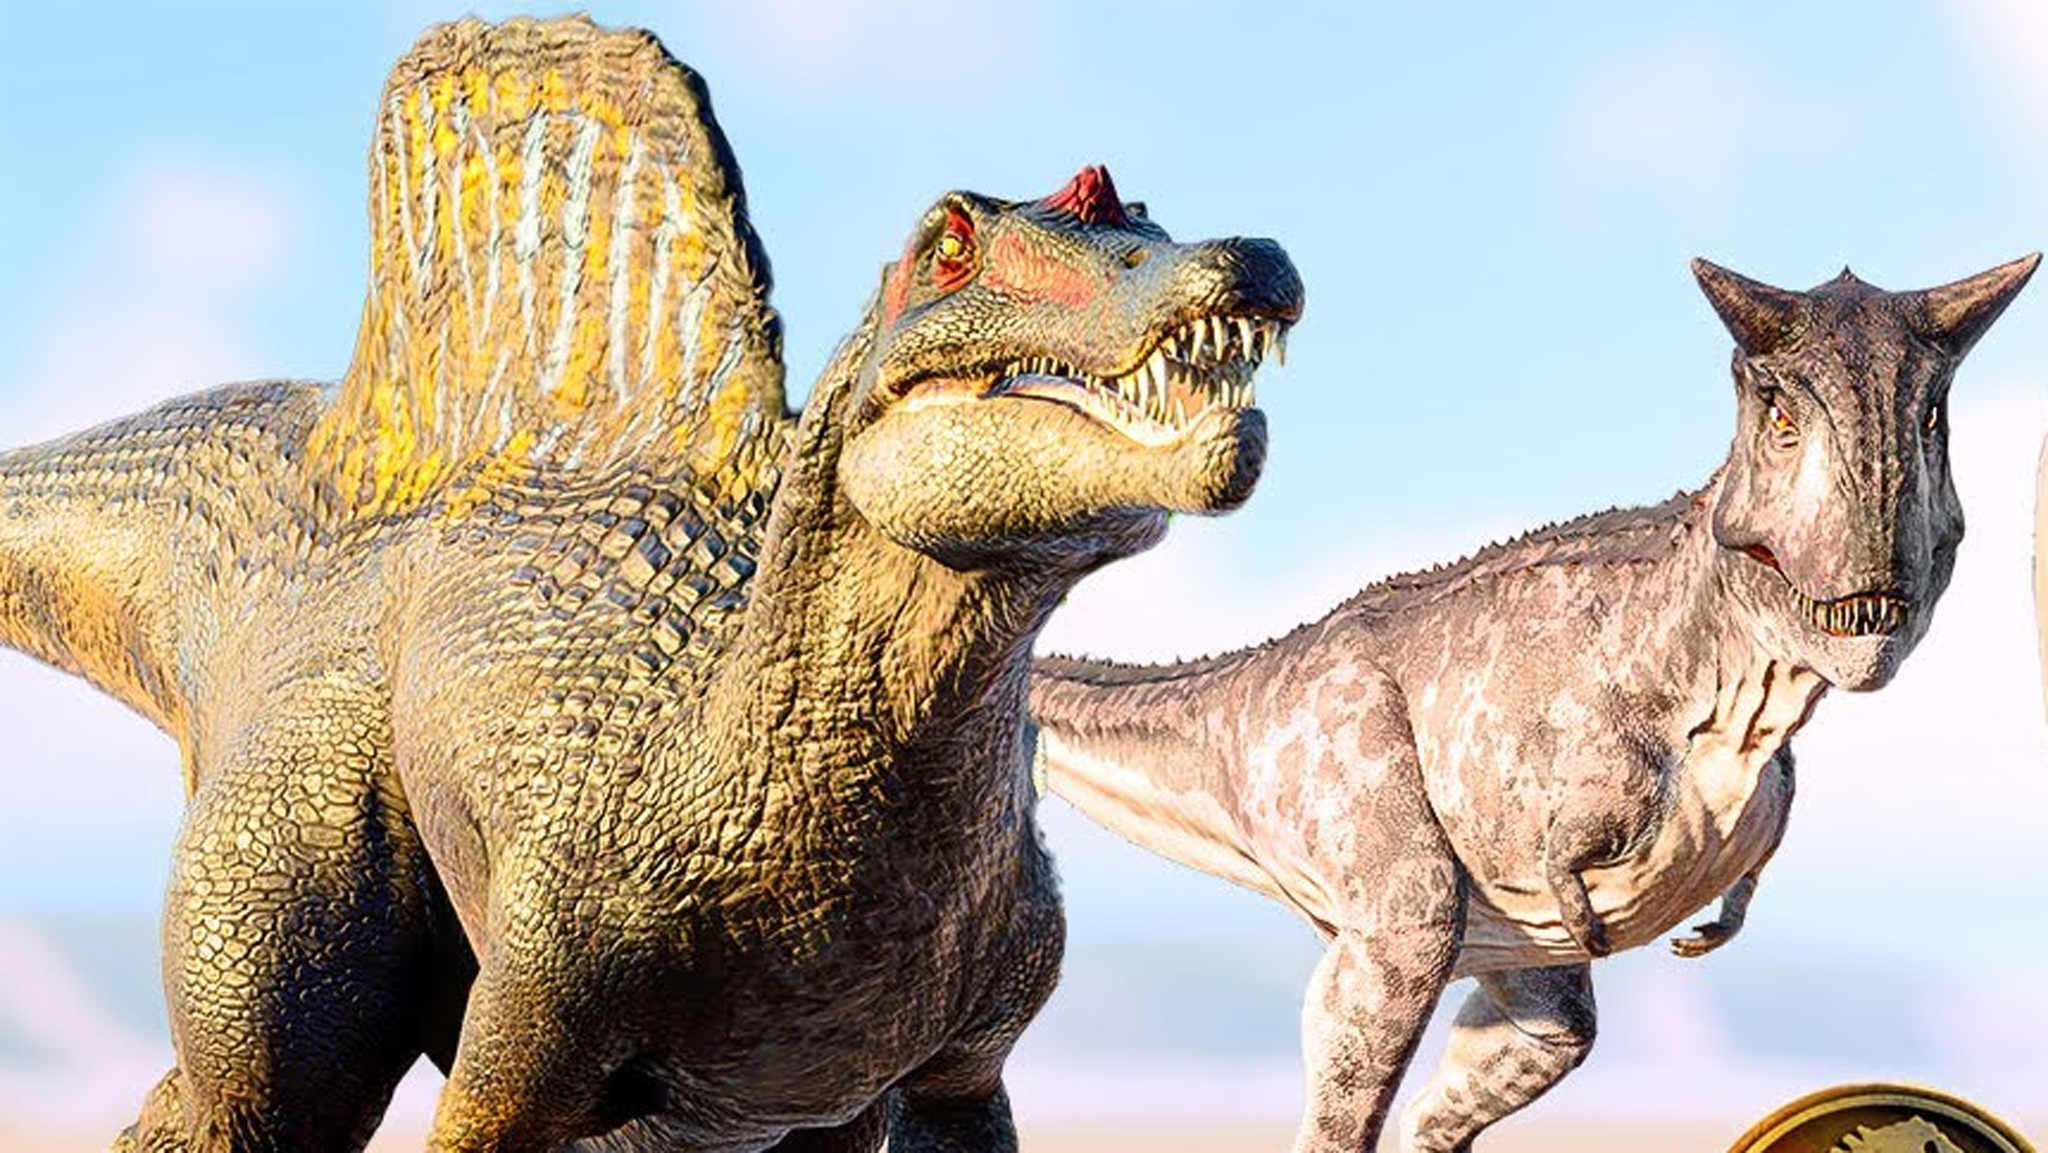 侏罗纪十大食肉恐龙图片